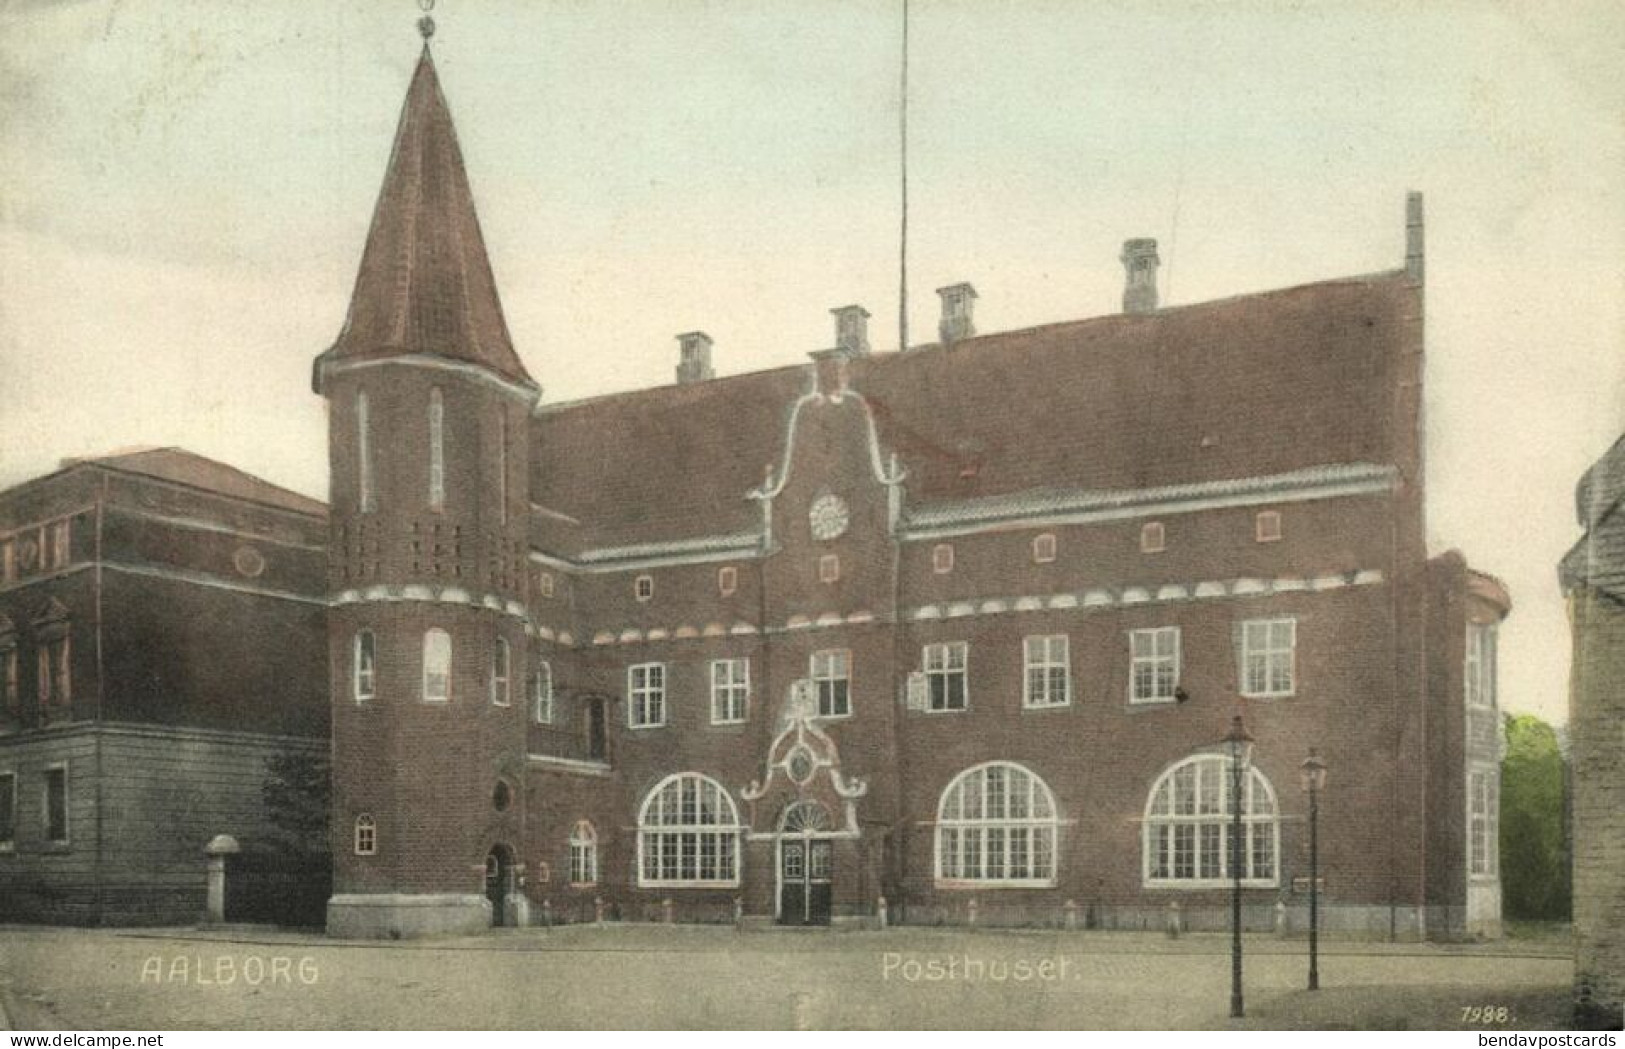 Denmark, AALBORG ÅLBORG, Posthuset, Post Office (1912) Postcard - Denmark